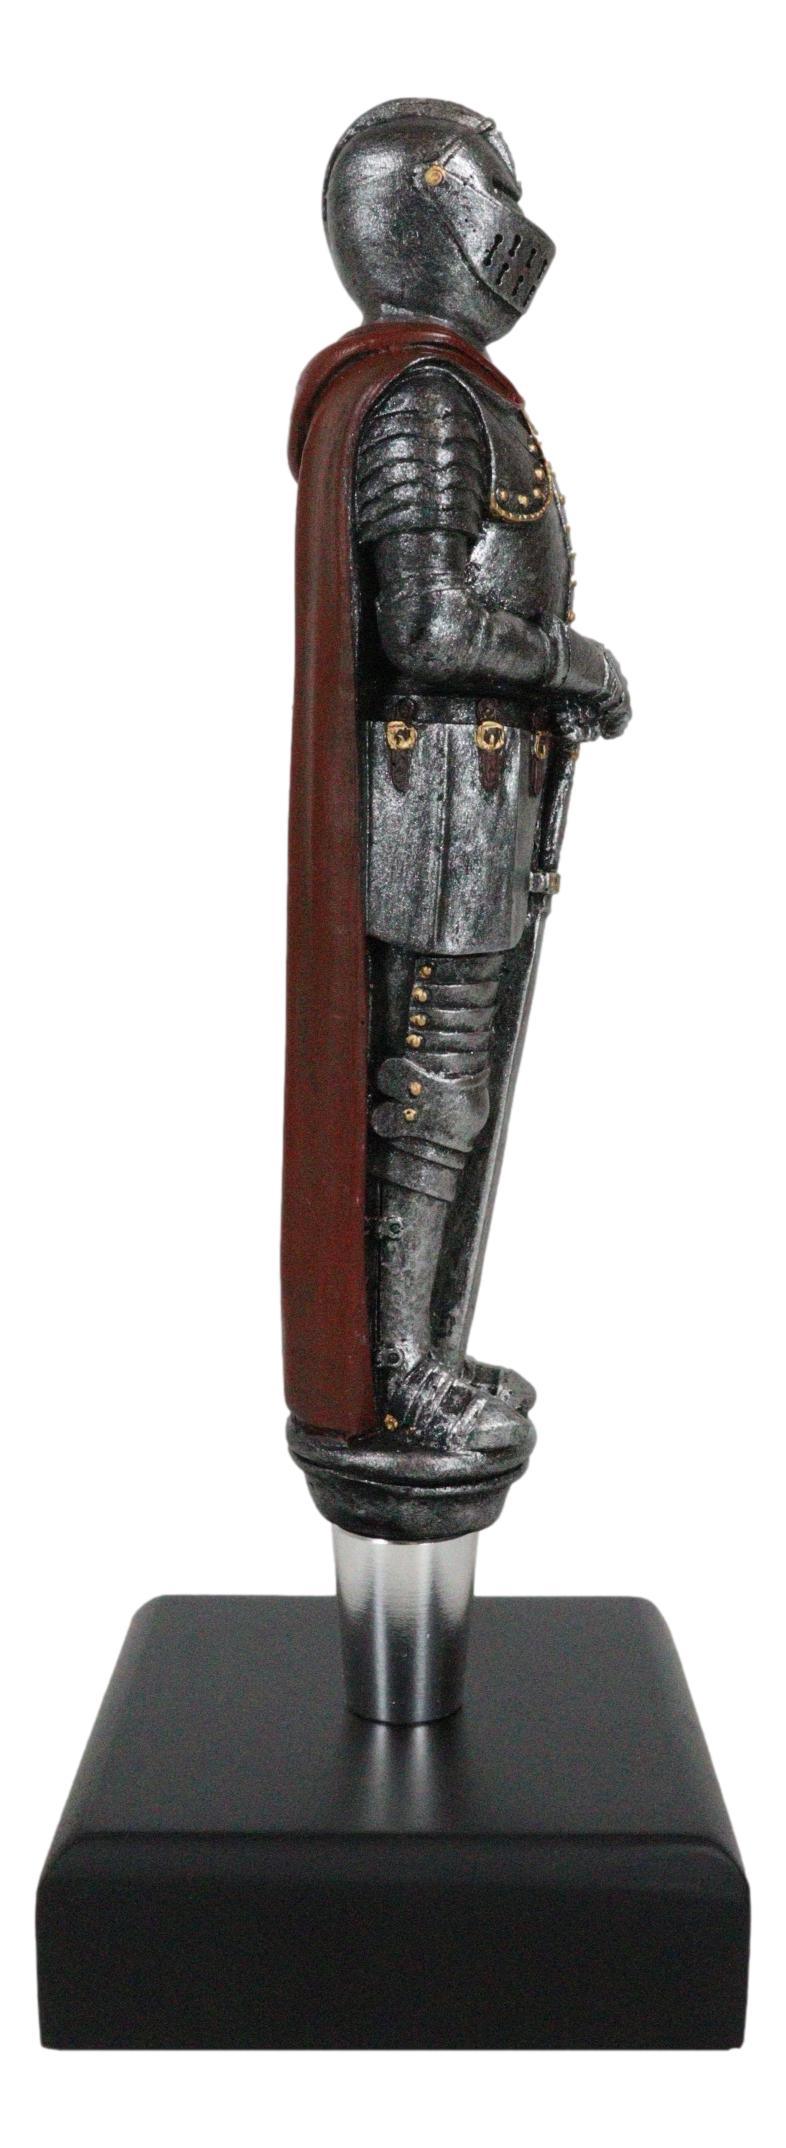 Medieval Suit Of Armor Kings Knight Swordsman Novelty Beer Tap Handle Figurine